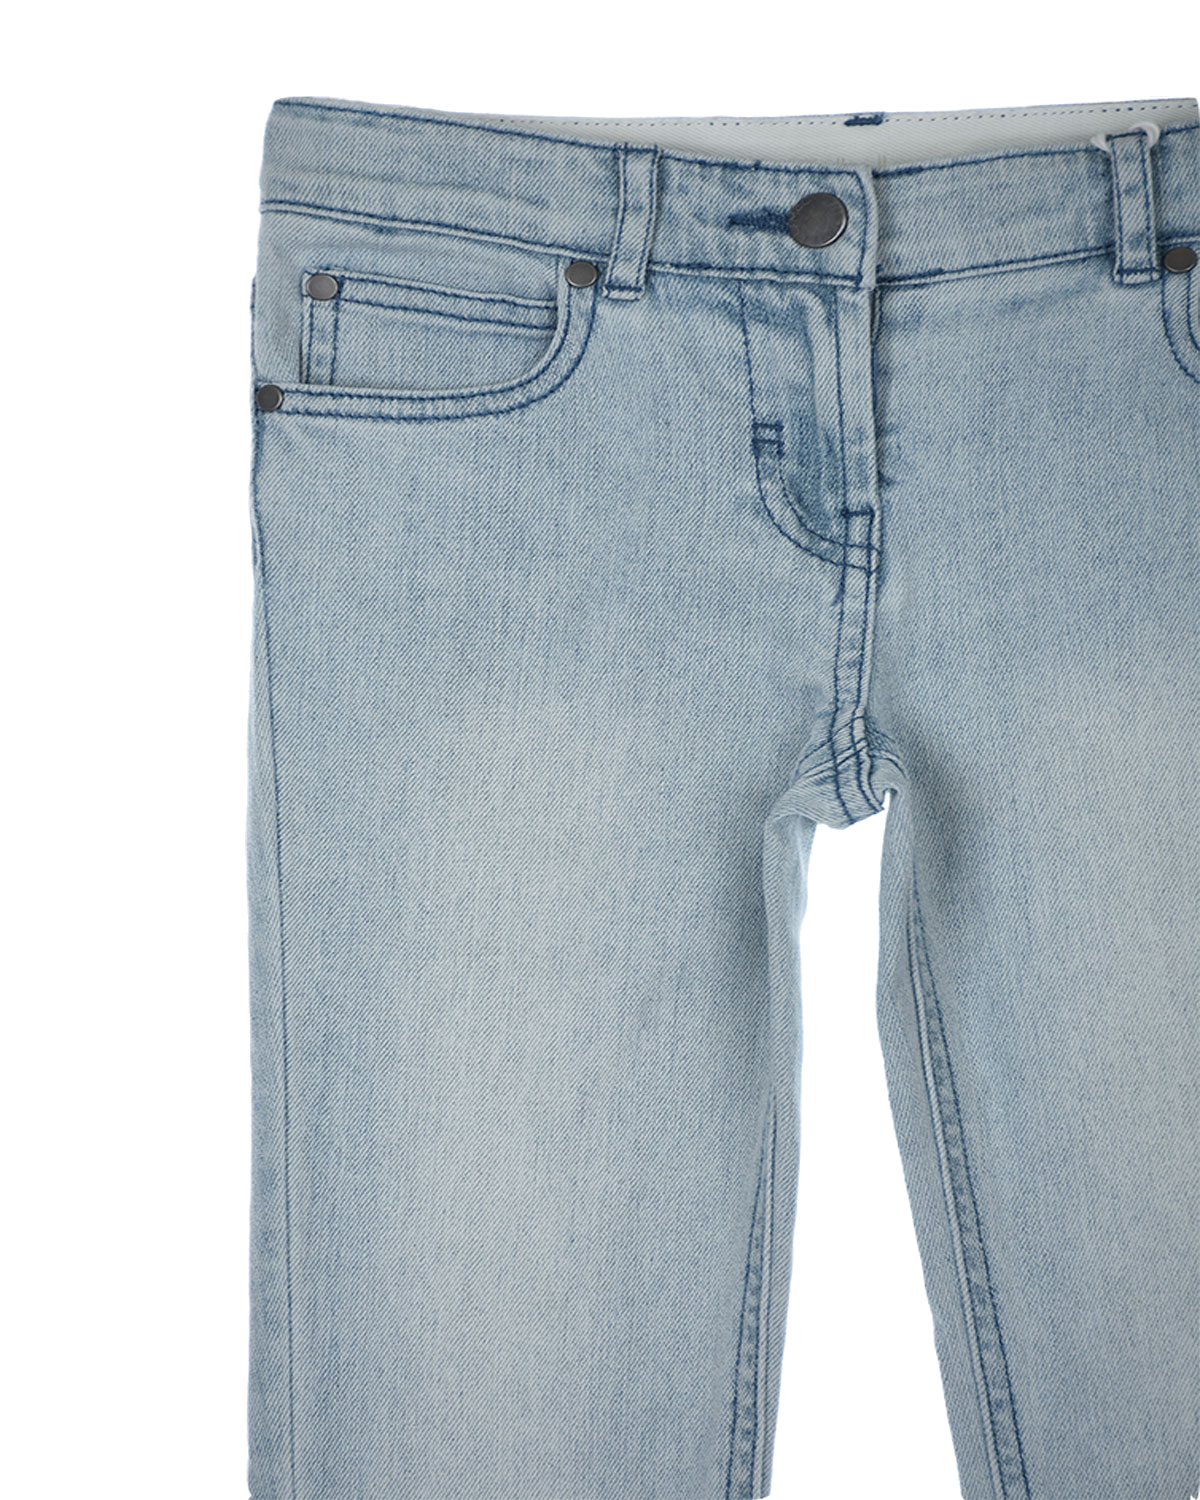 Базовые джинсы с отделкой бахромой Stella McCartney детские, размер 104, цвет голубой - фото 3